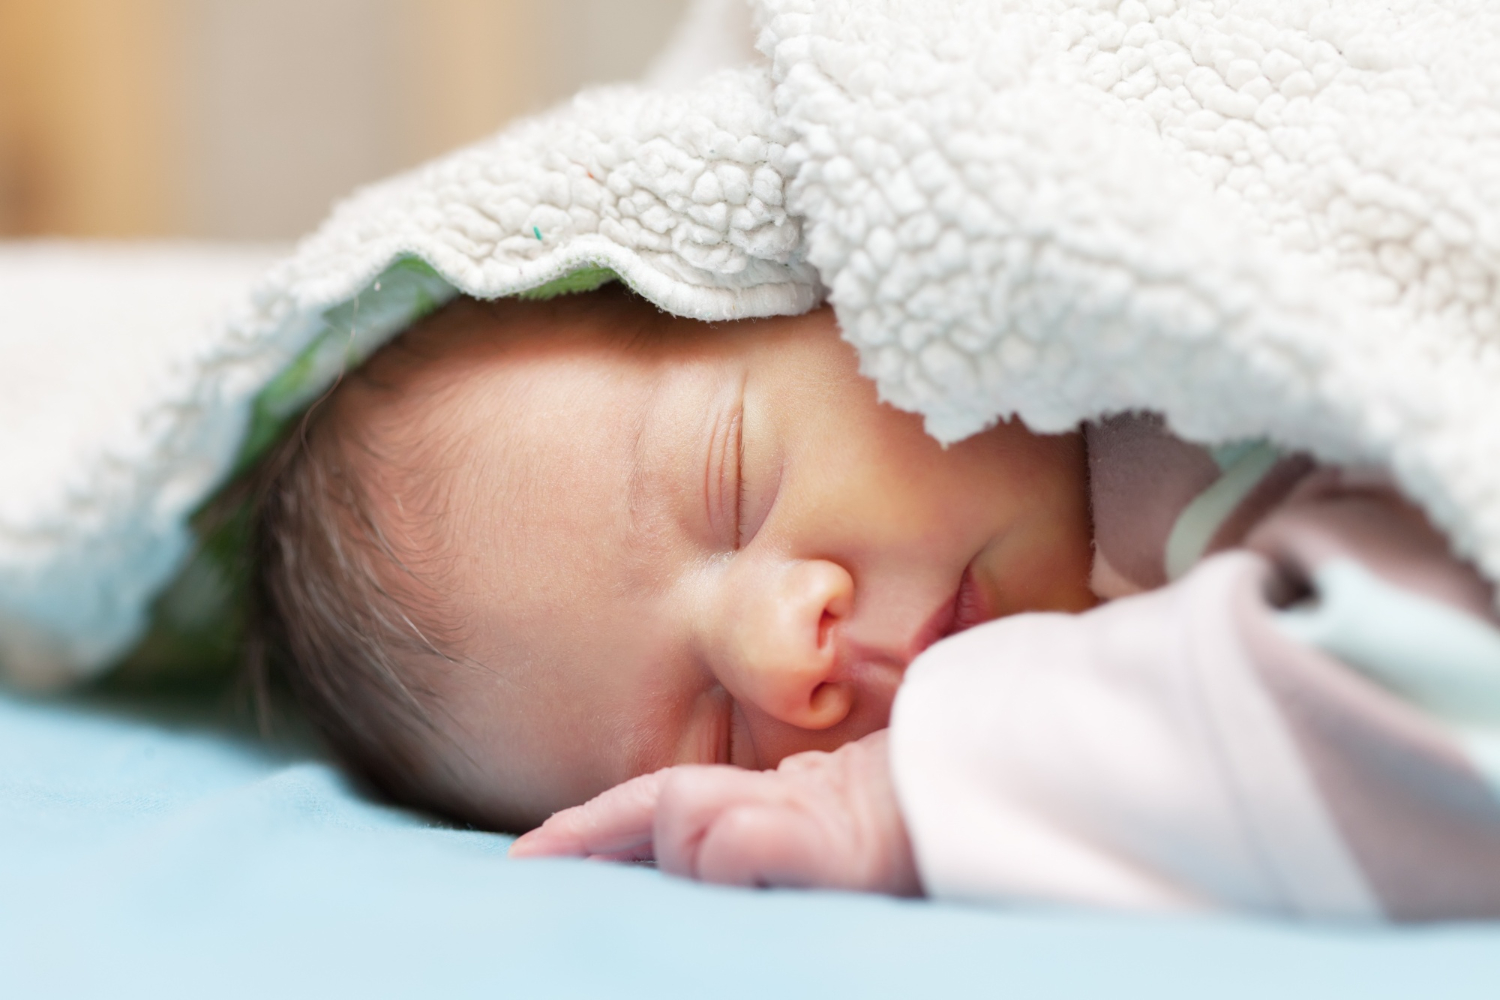  Sen o novorozeném dítěti je jedním z nejkrásnějších snů.